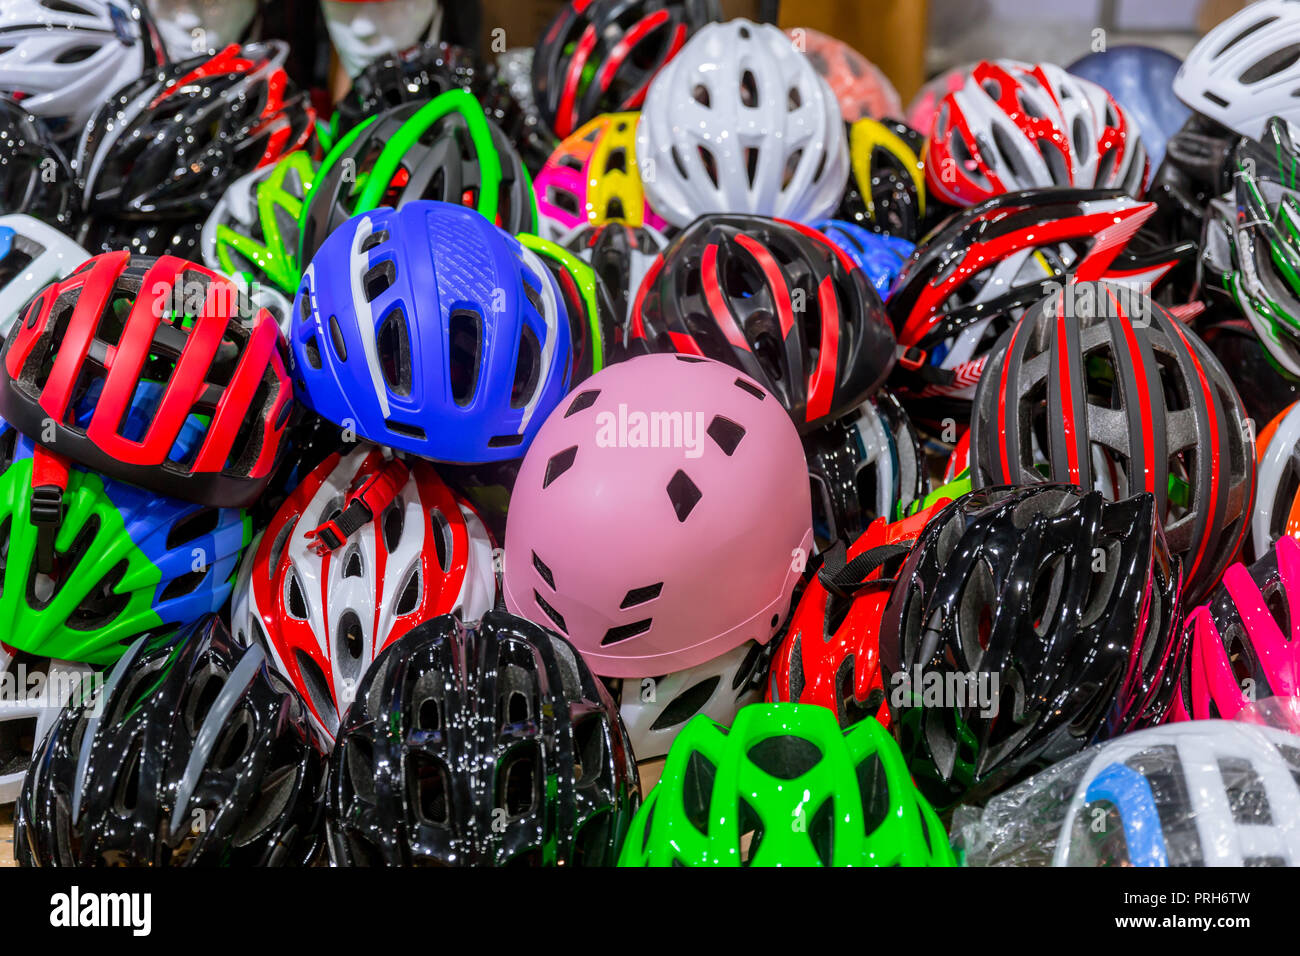 Vielen bunten Fahrradhelm für Sicherheit radfahren Radfahrer Kopfschutz  Stockfotografie - Alamy